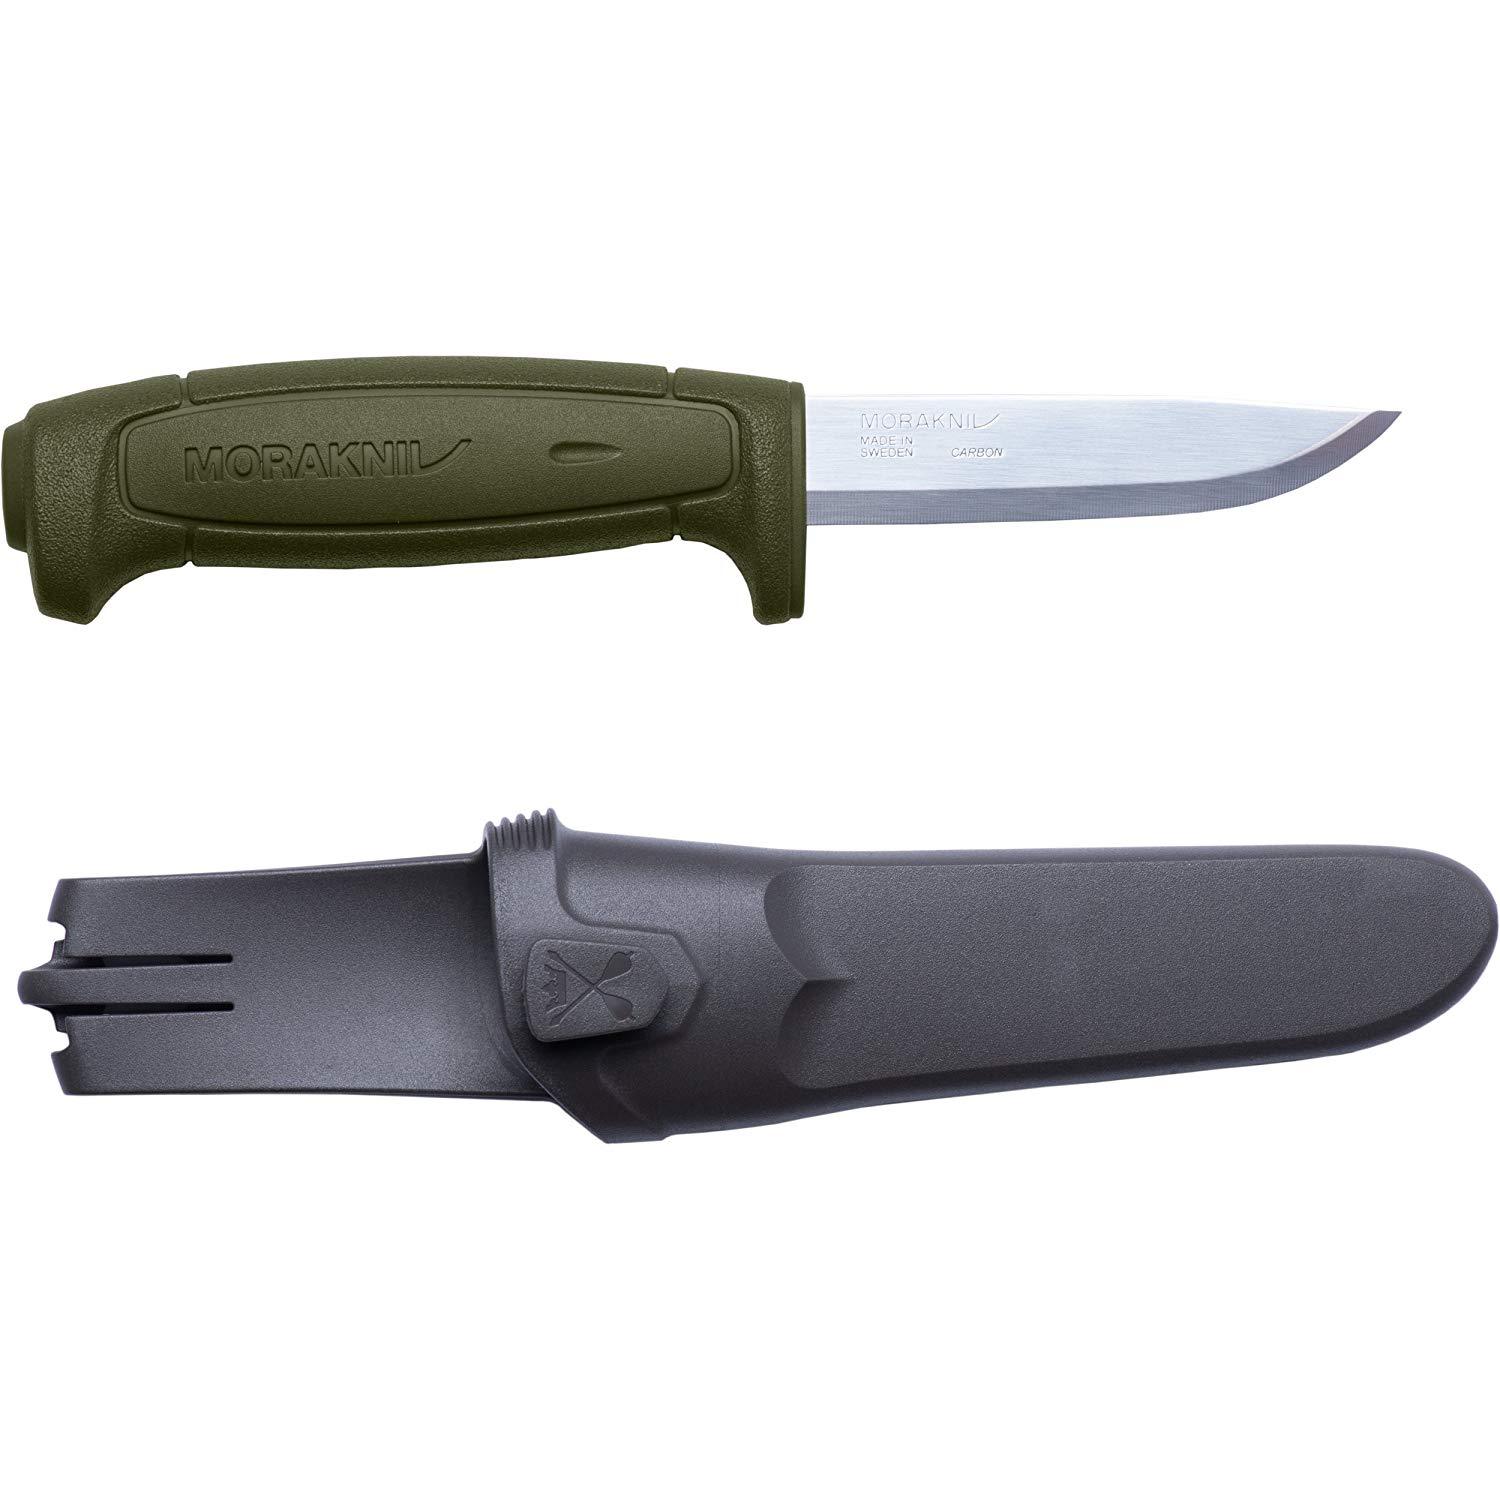 Morakniv Basic 511 Fixed Blade Knife - Military Green